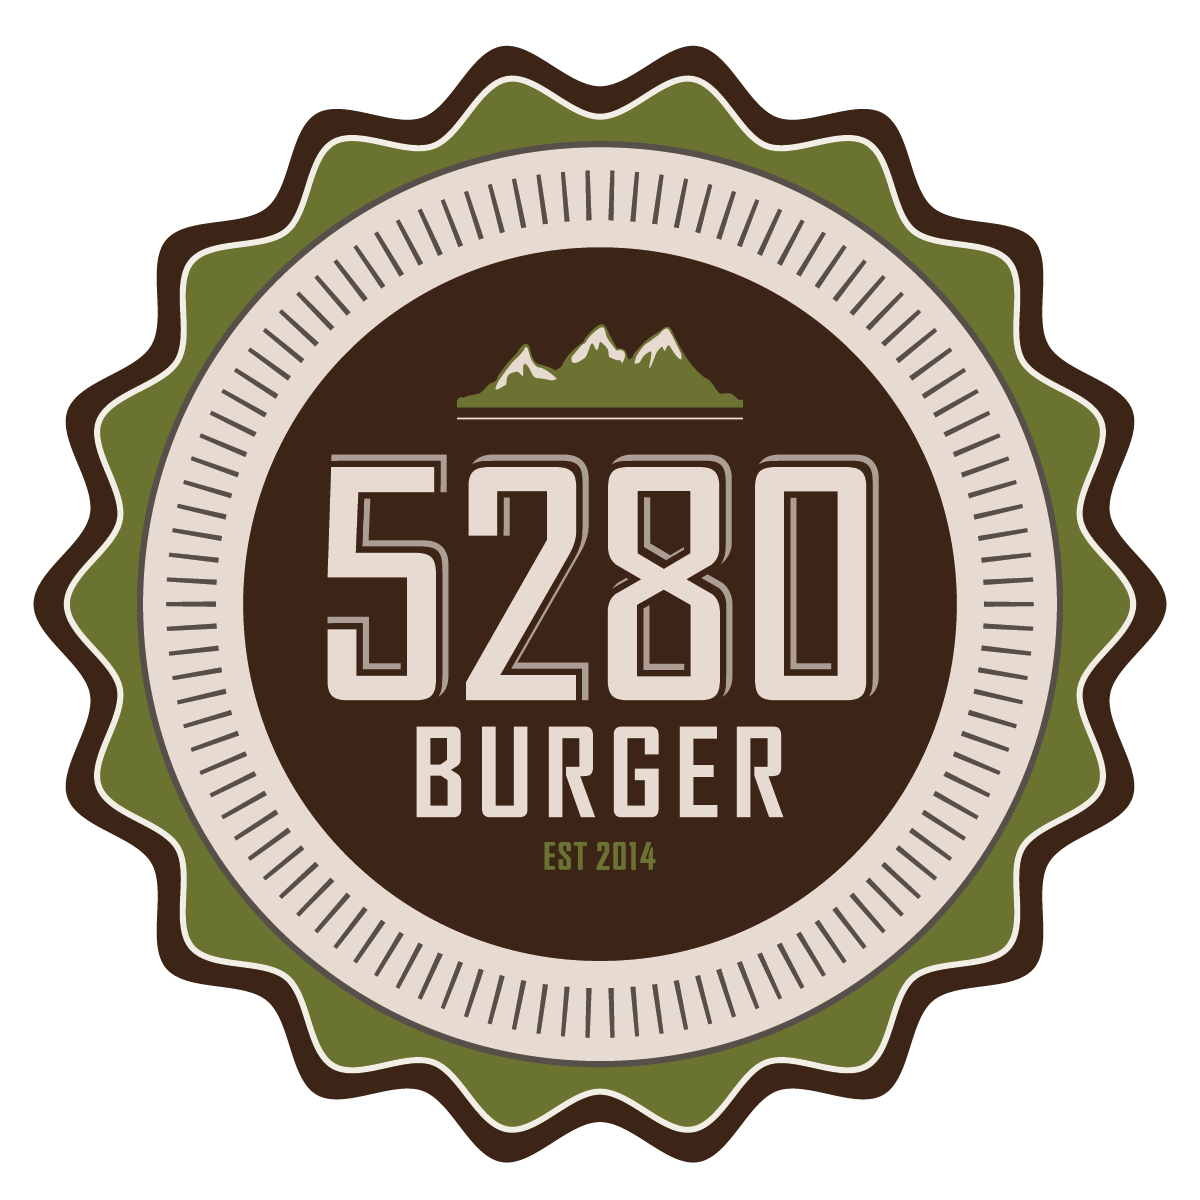 5280 Burger Bar